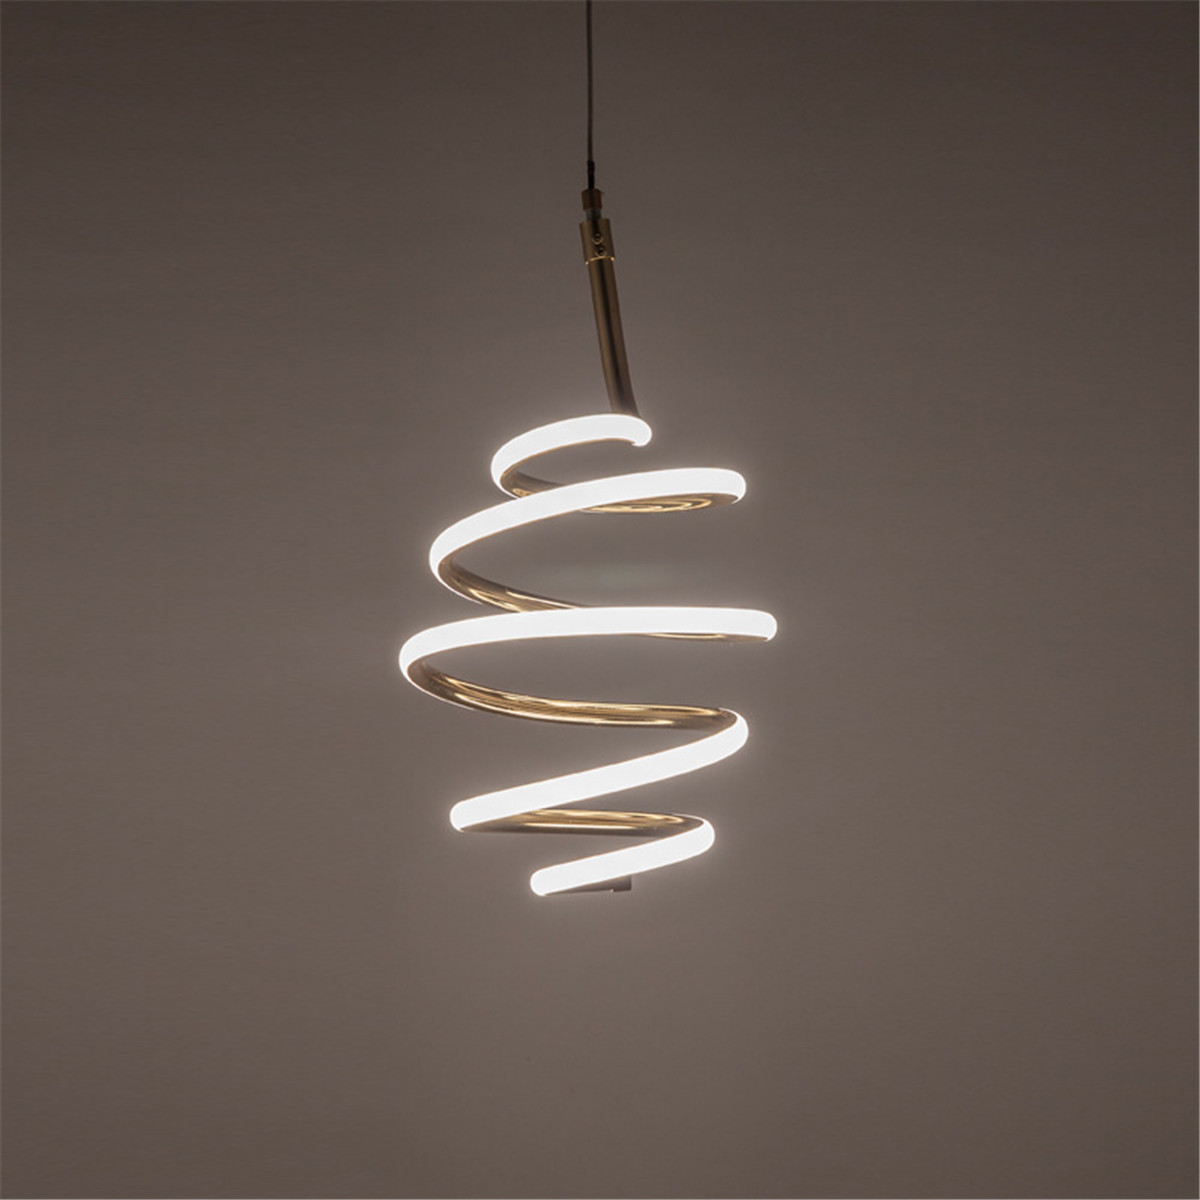 Remote-Control-LED-Pendant-Lights-Lamp-Modern-Chandelier-Home-Bedroom-Lighting-1675000-4